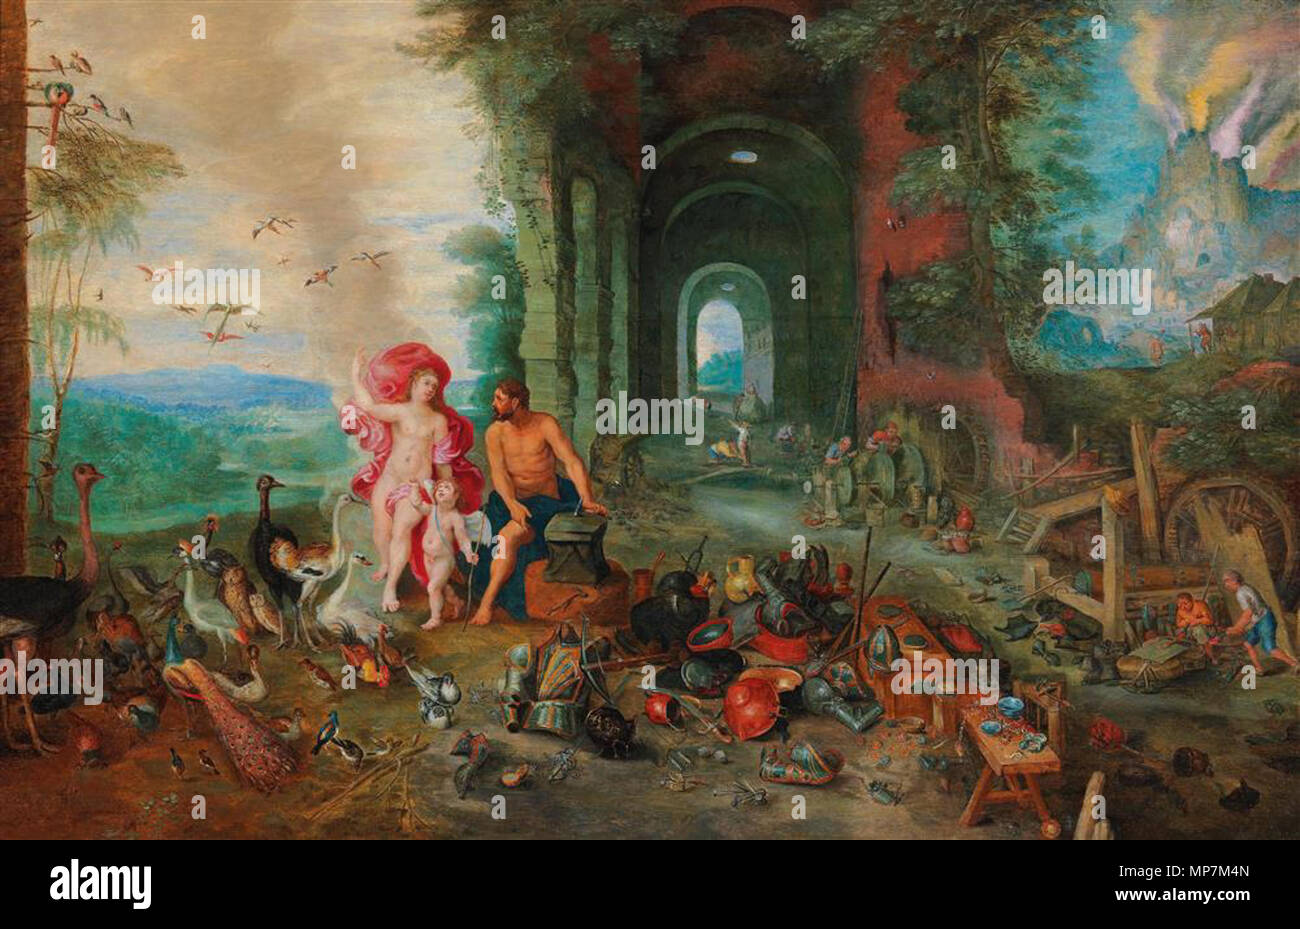 Une allégorie de l'air et le feu . Jan Brueghel le Jeune (1601-1678) Noms alternatifs Jan Bruegel (II), Jan Brueghel (II), Jan Brueghel le jeune peintre et dessinateur Flamand Description Date de naissance/décès 13 septembre 1601 (baptisé) 1er septembre 1678 Lieu de naissance/décès Anvers Anvers lieu d'Italie (1622-août 1625), Anvers (1625-1678) contrôle d'autorité : Q285933 : VIAF 42046414 ISNI : 0000 0000 8376 3302 ULAN : 500013747 RCAC : n85095027 : WGA, Jan Brueghel le Jeune WorldCat 695 Jan Breughel (II) - une allégorie de l'air et le feu Banque D'Images